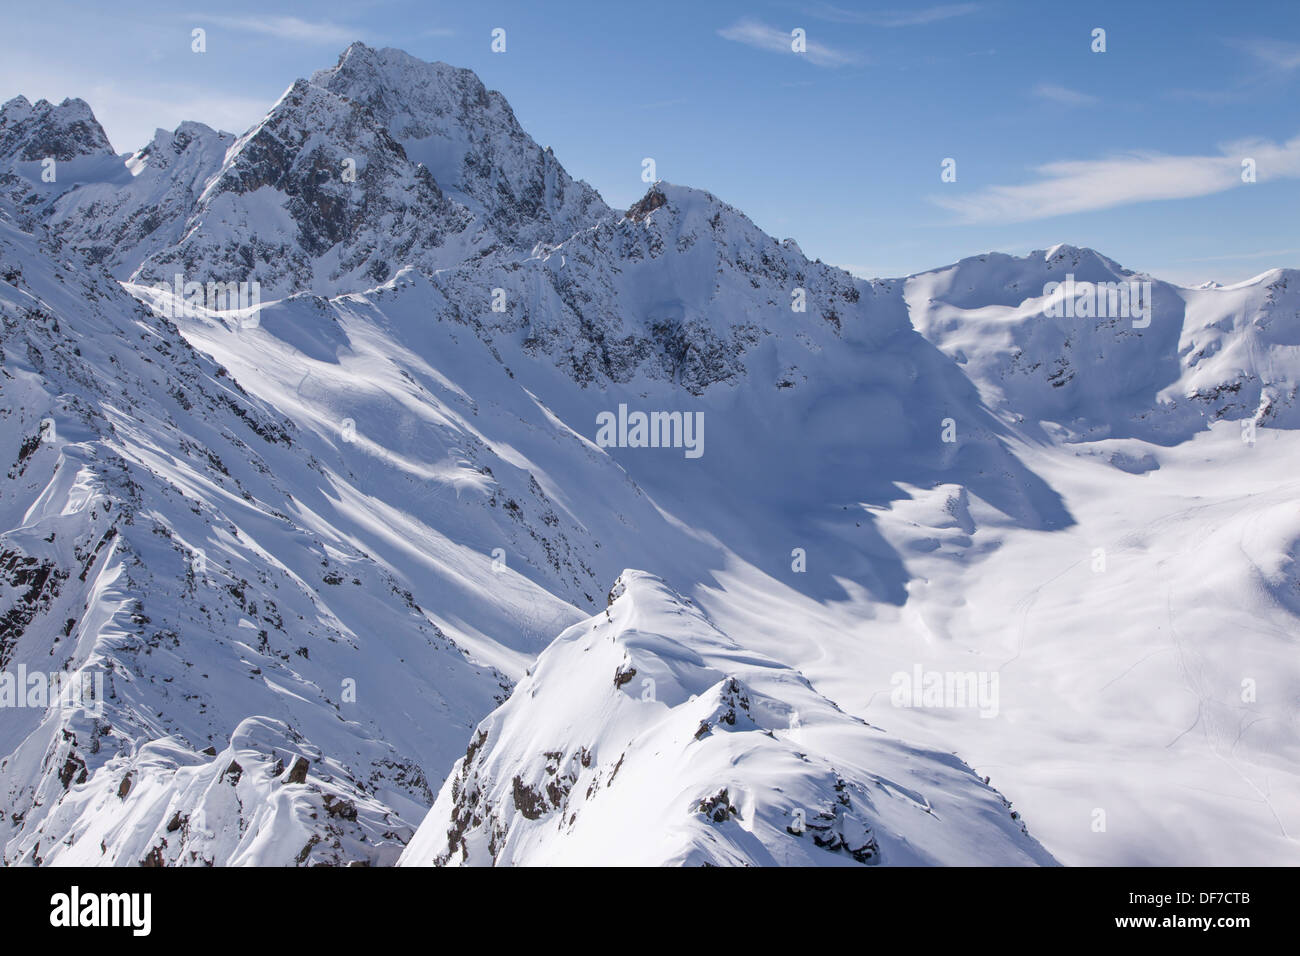 The snowy Sellrain mountains, Stubai Alps, Tyrol, Austria Stock Photo